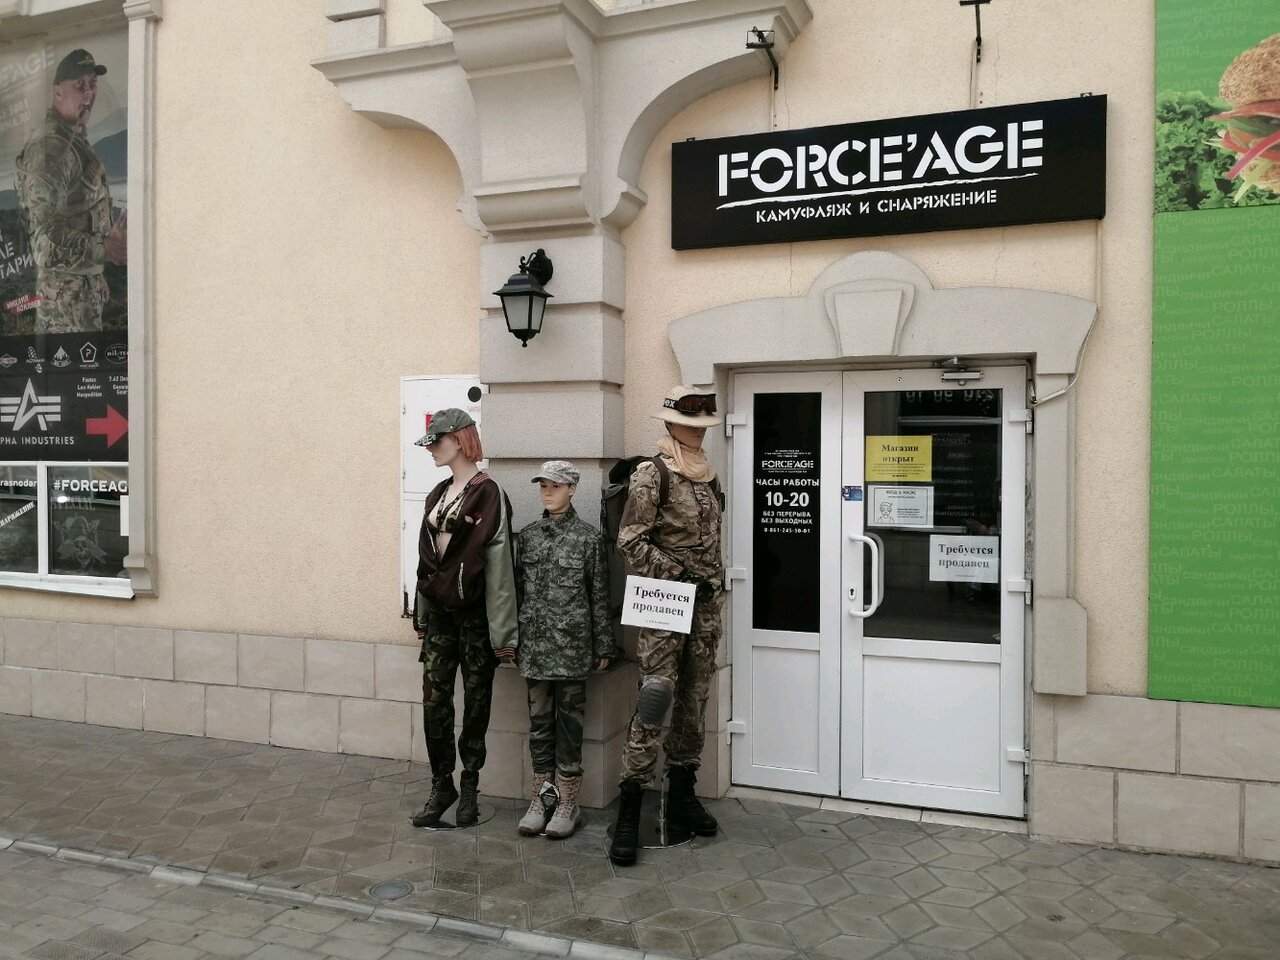 Вход в магазин камуфляжа и снаряжения "Force'Age" на Стасова в Краснодаре